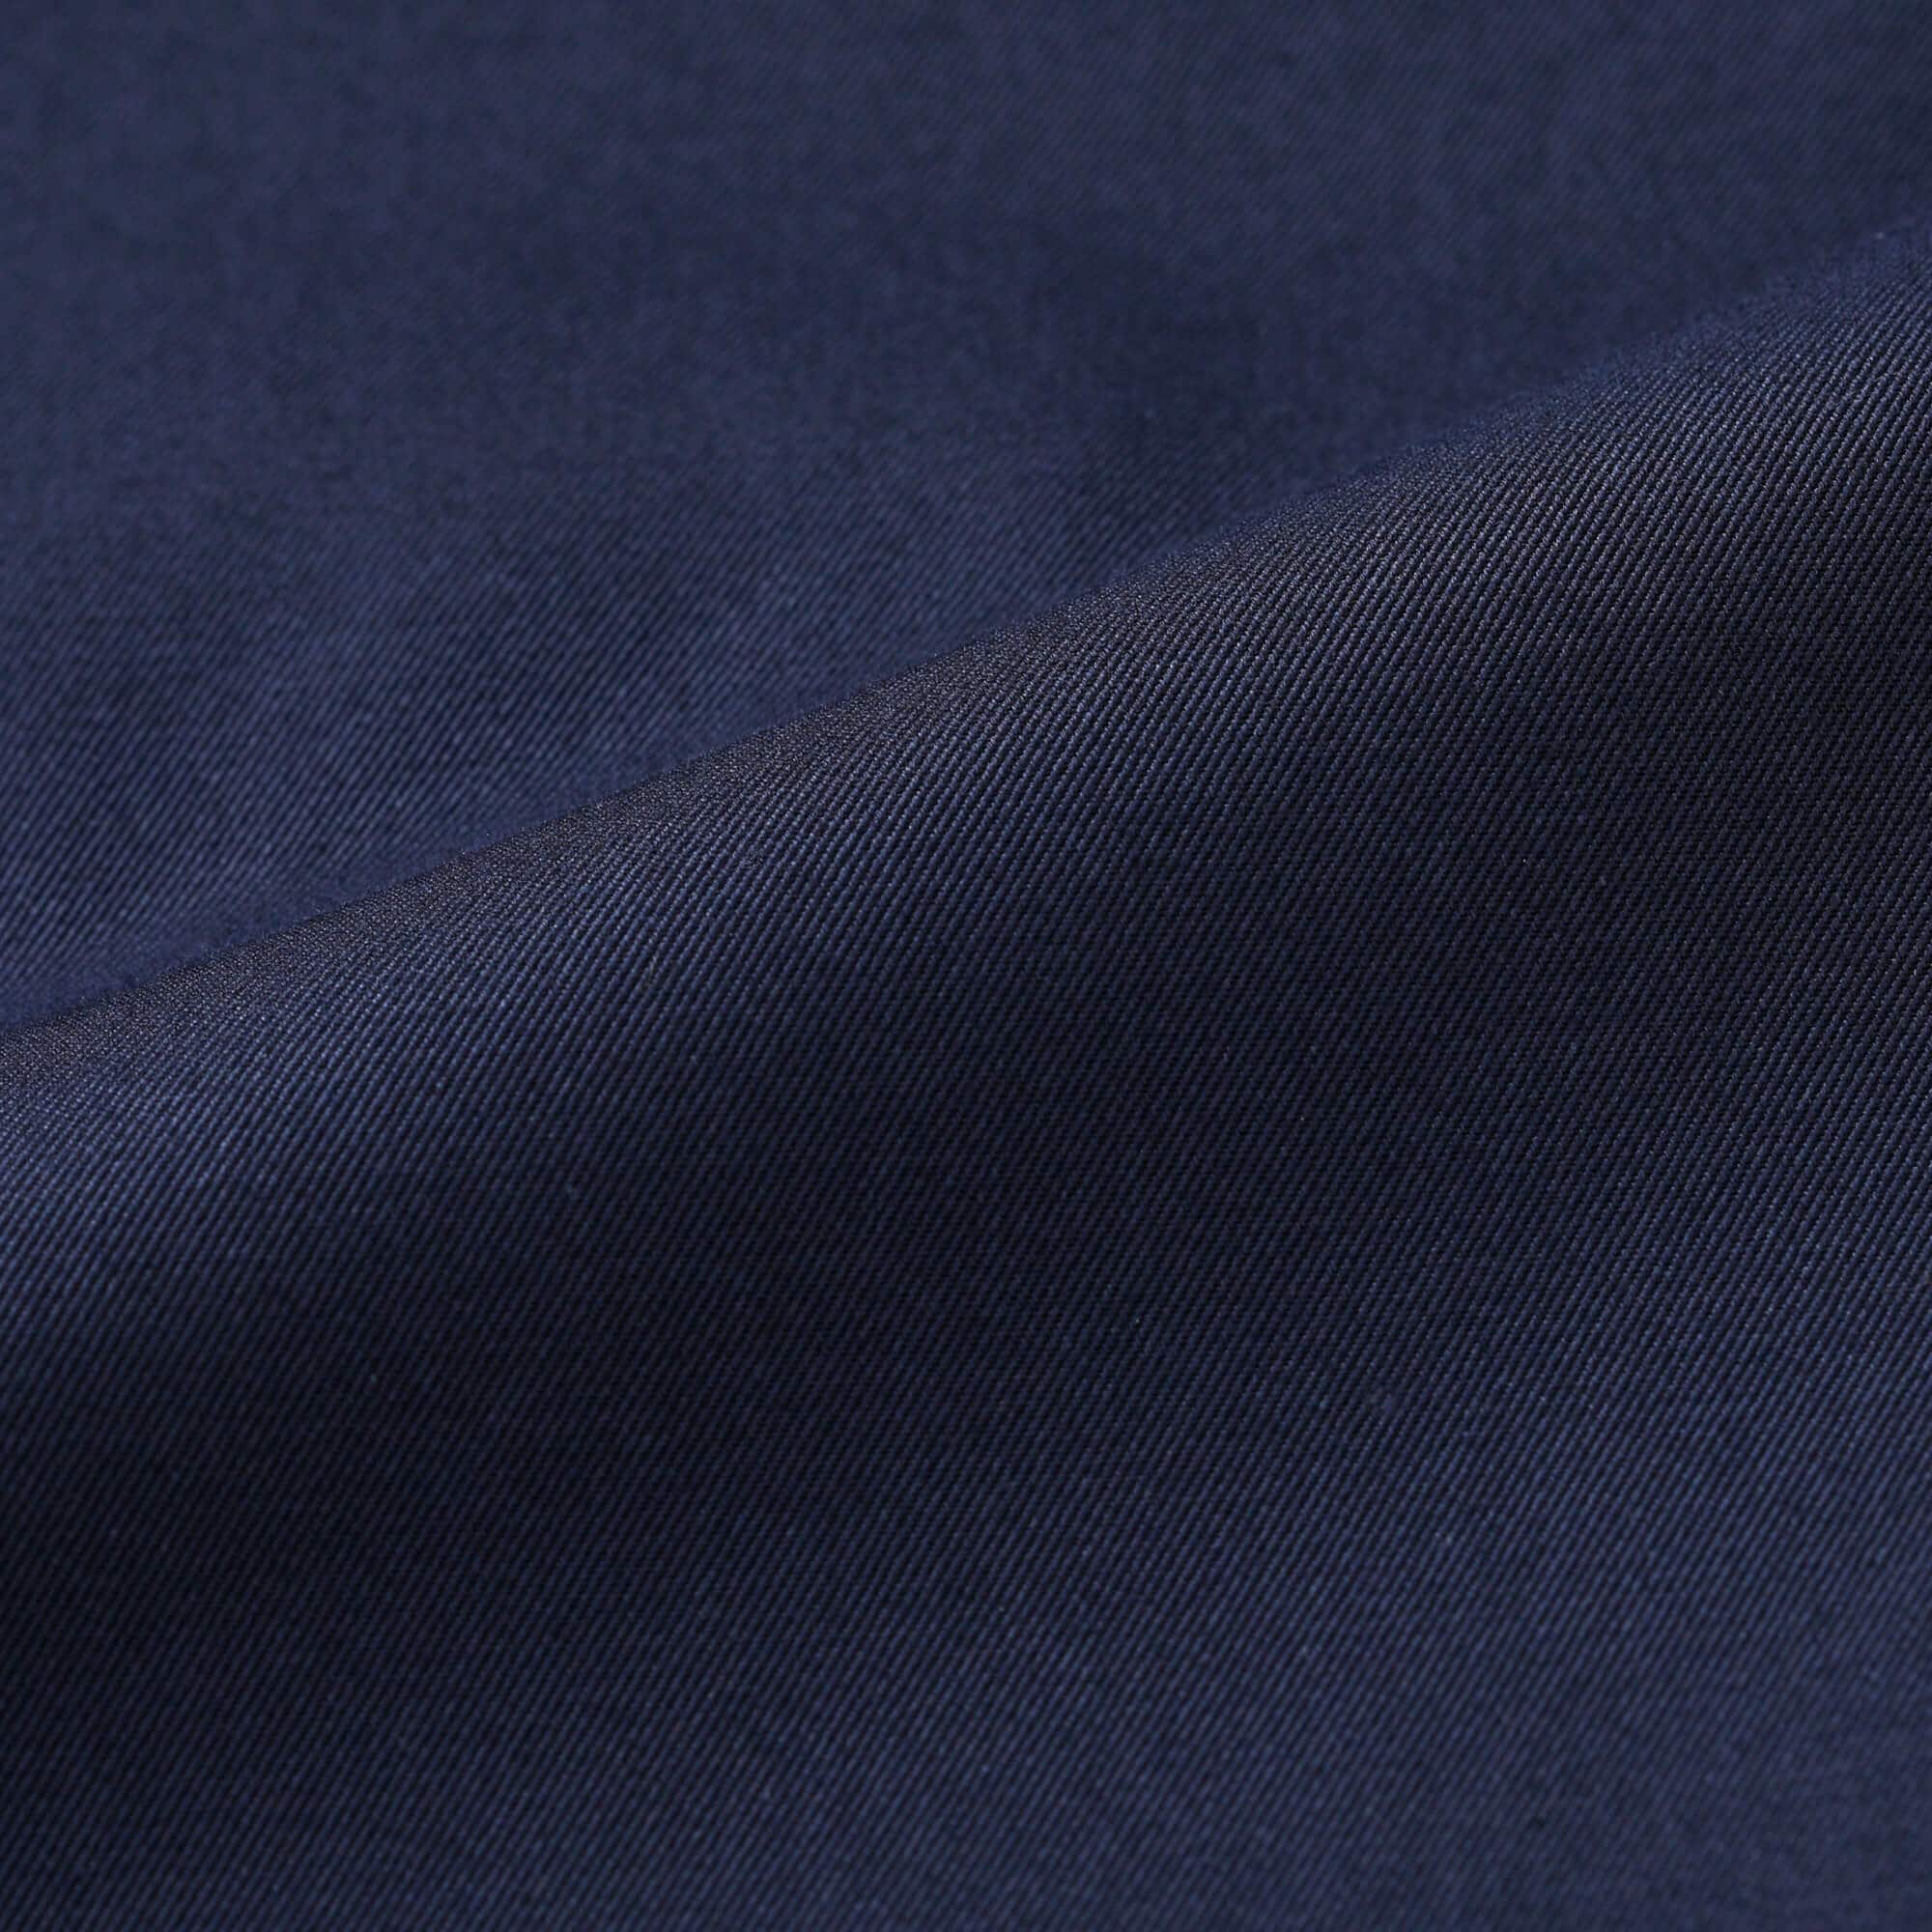 Authentic ステンカラーコート|ファッション通販のNY.online